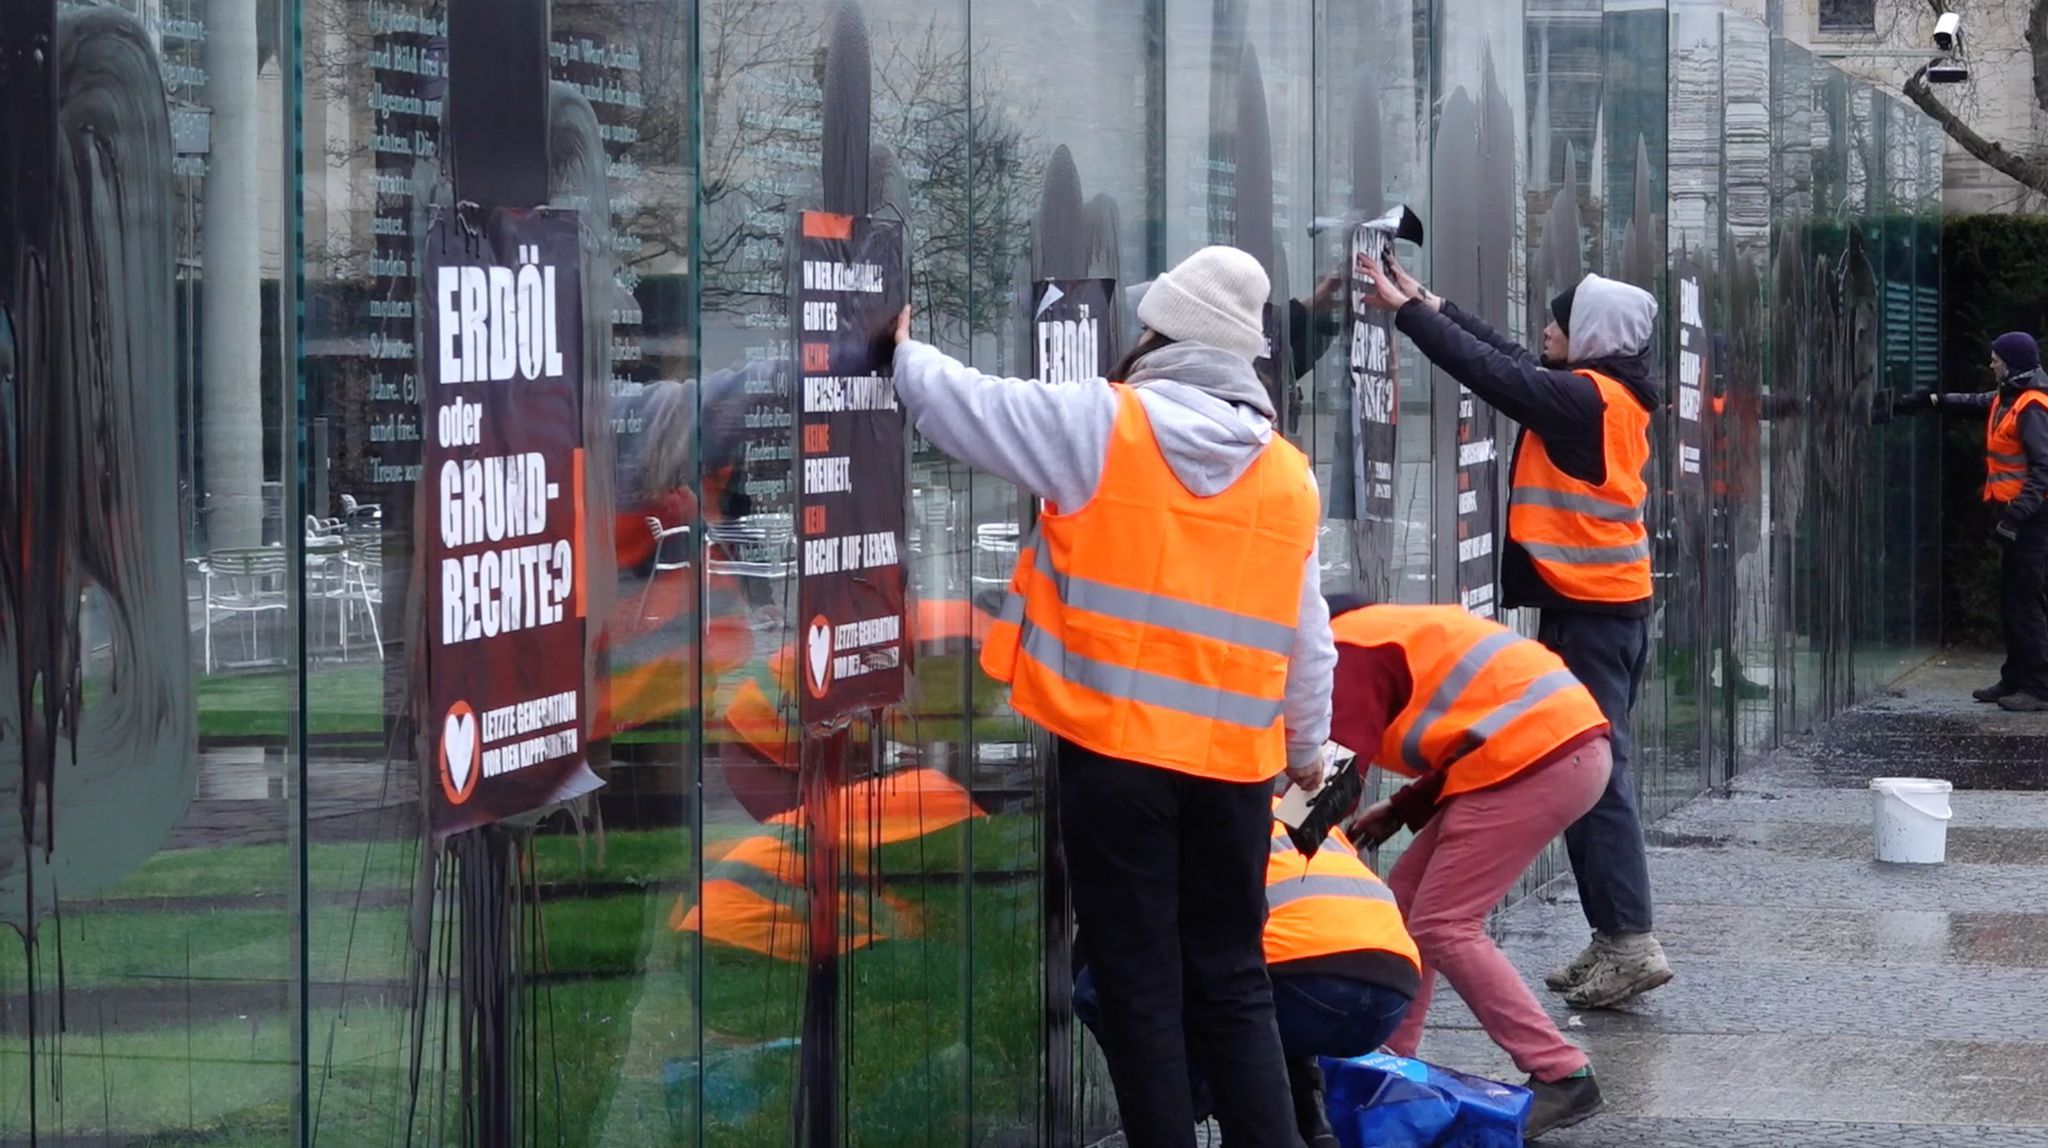 Klimaaktivisten der „Letzten Generation“ beschmieren und plakatieren gläserne Grundgesetz-Skulptur am Bundestag. Foto: dpa/Kaeuler